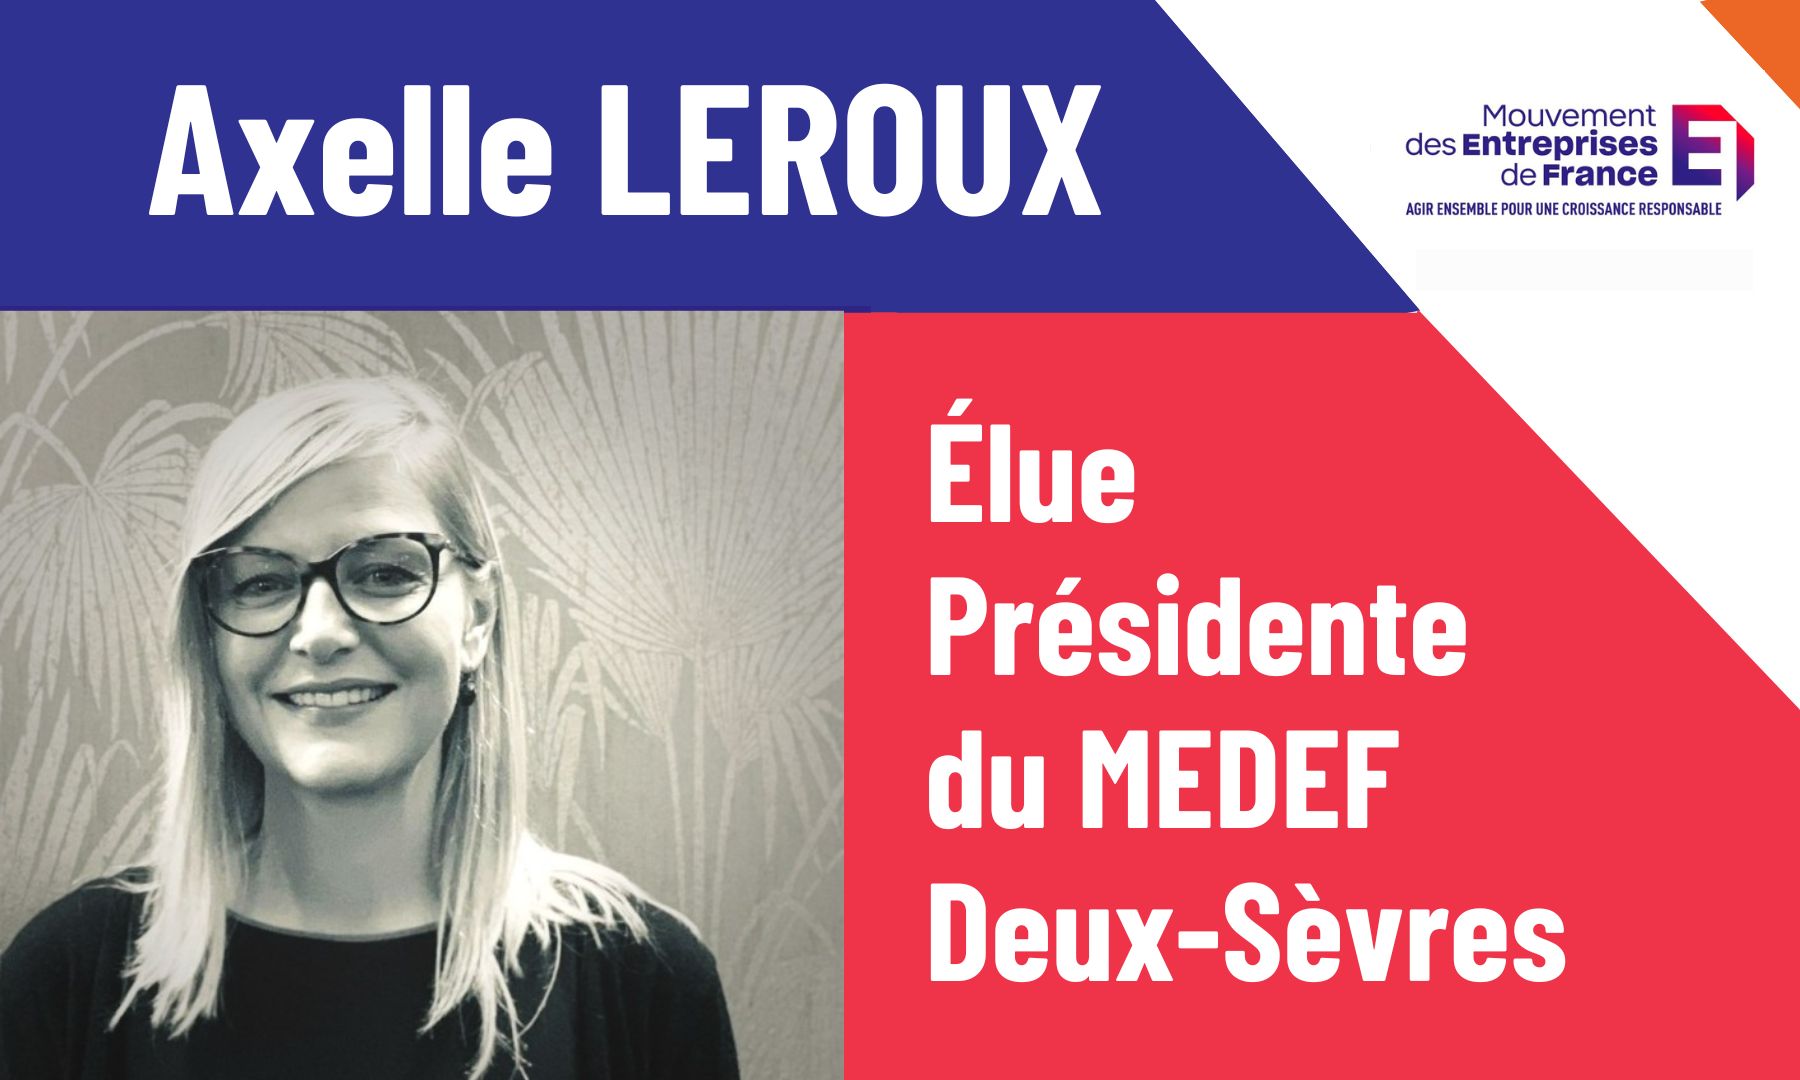 Axelle LEROUX, élue Présidente du  Medef Deux-Sèvres